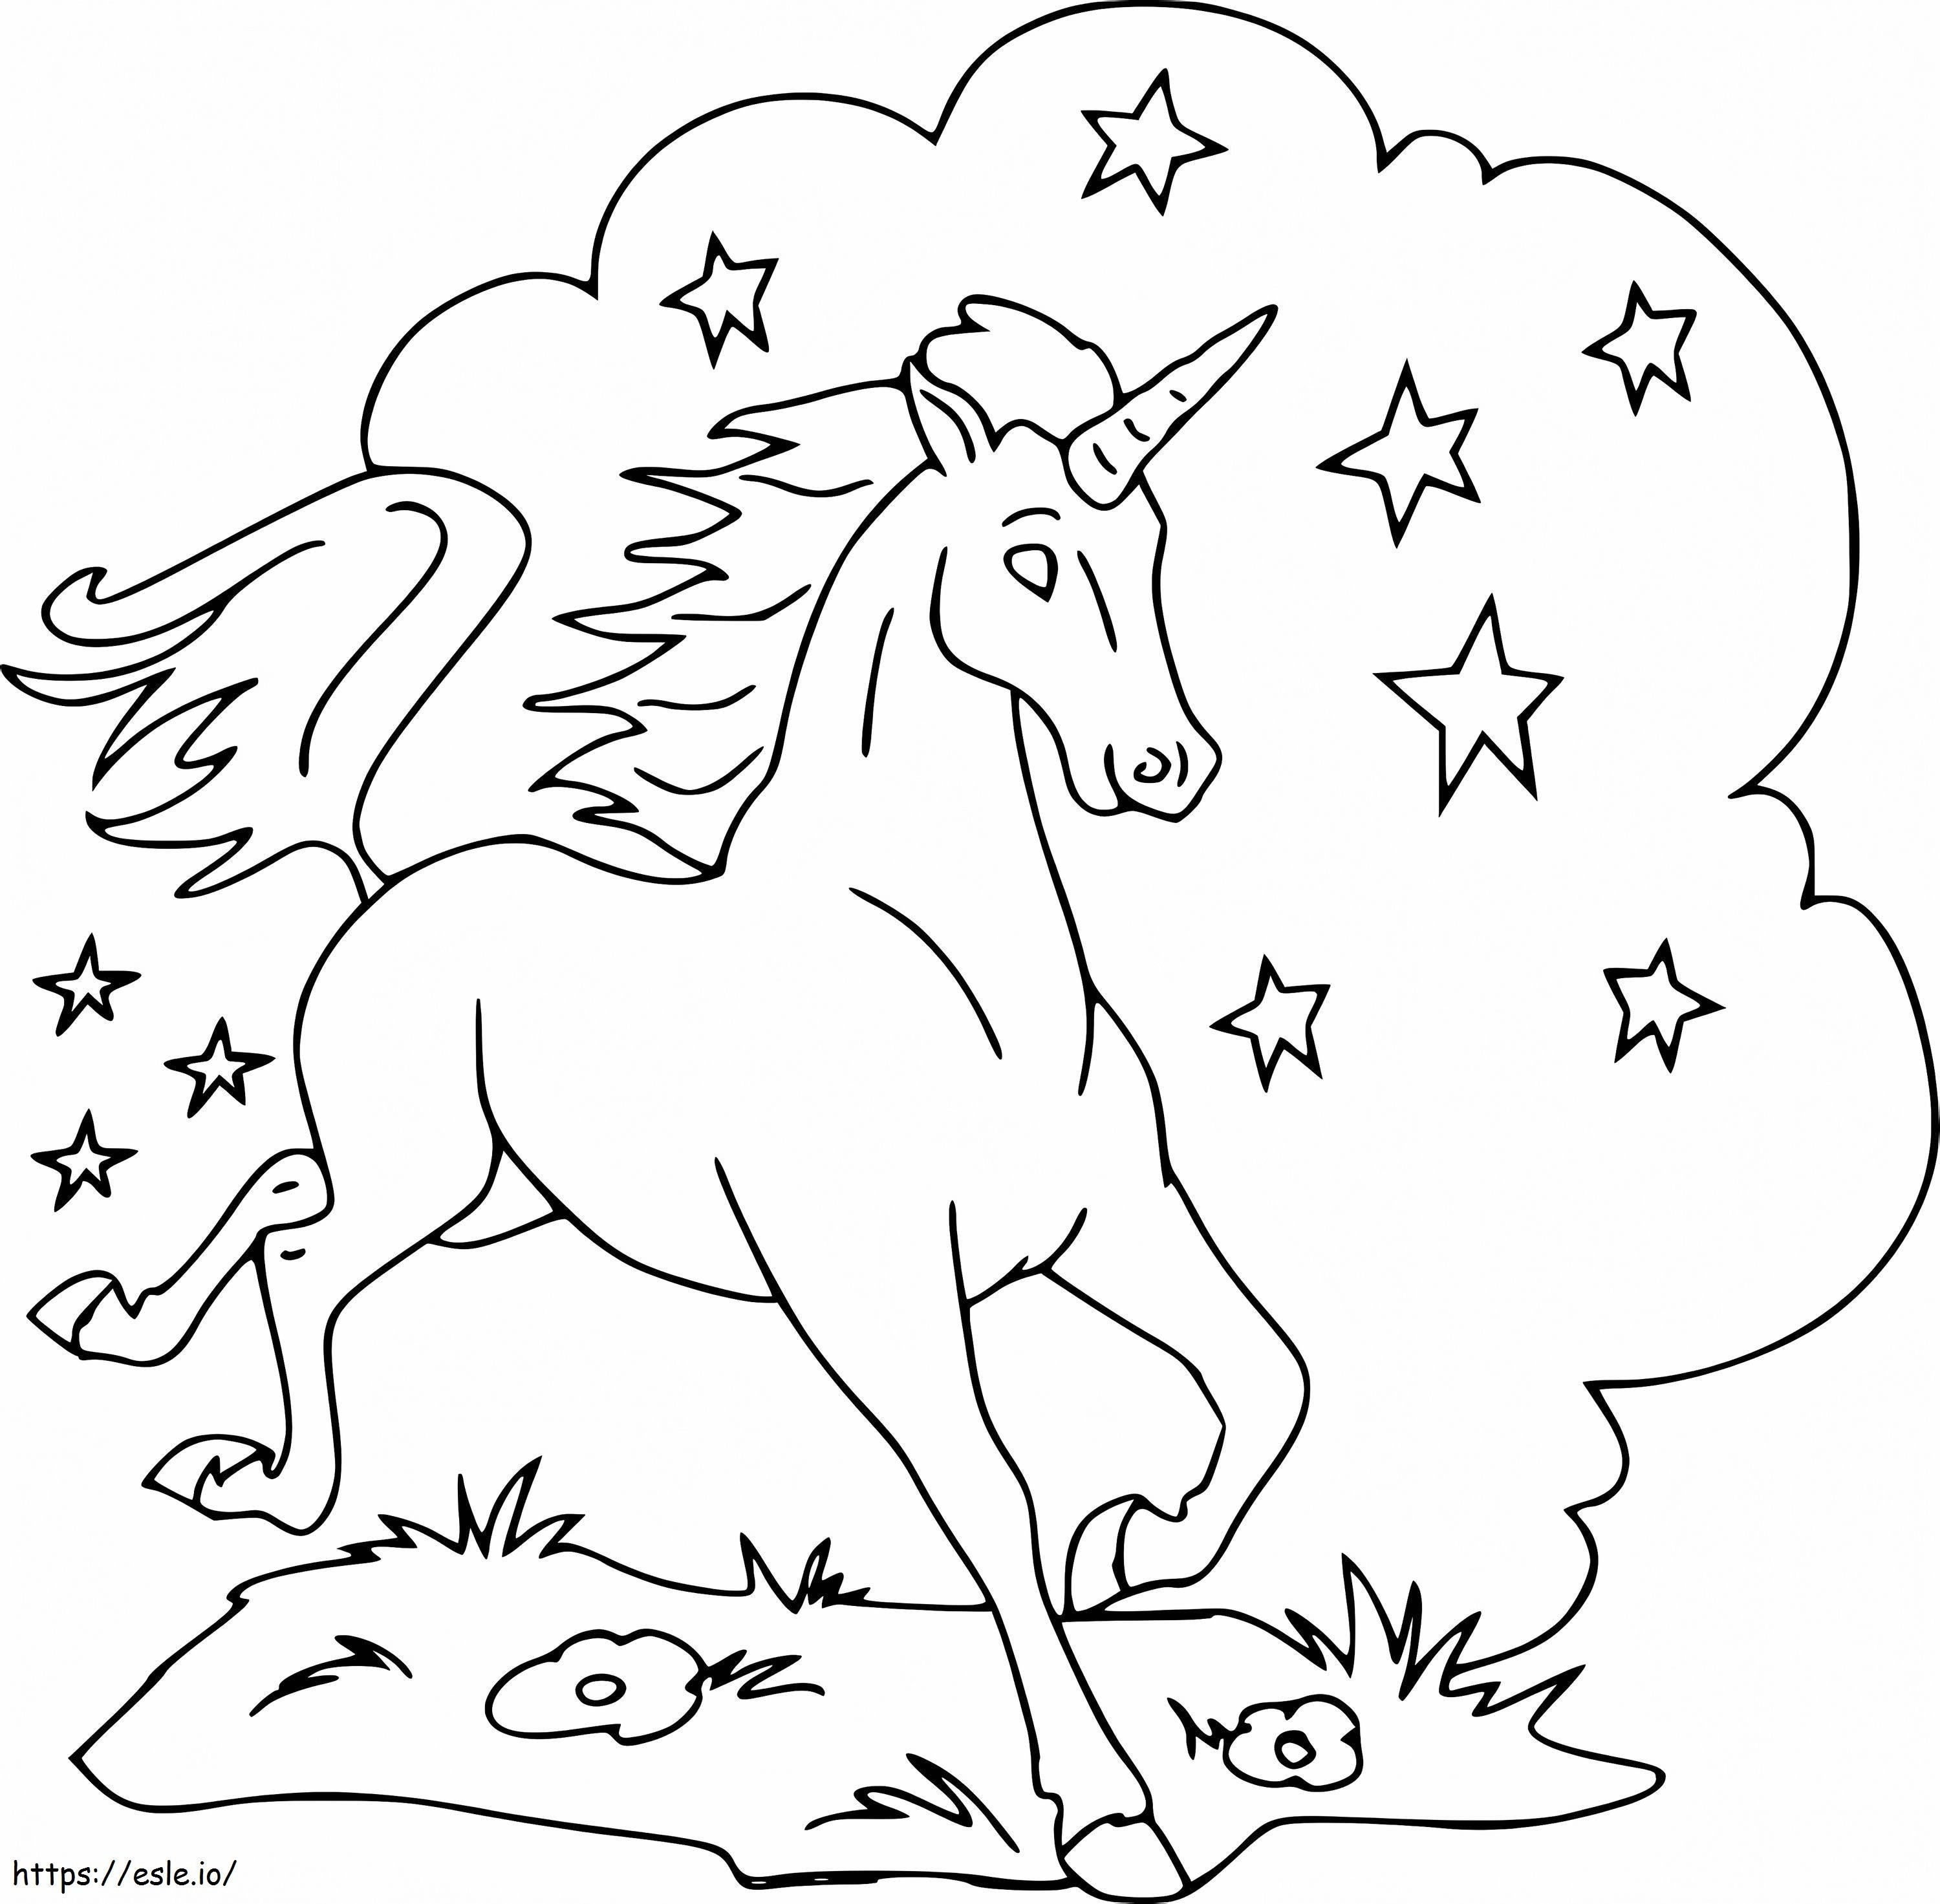 1563756494 Yıldızlı Unicorn A4 boyama